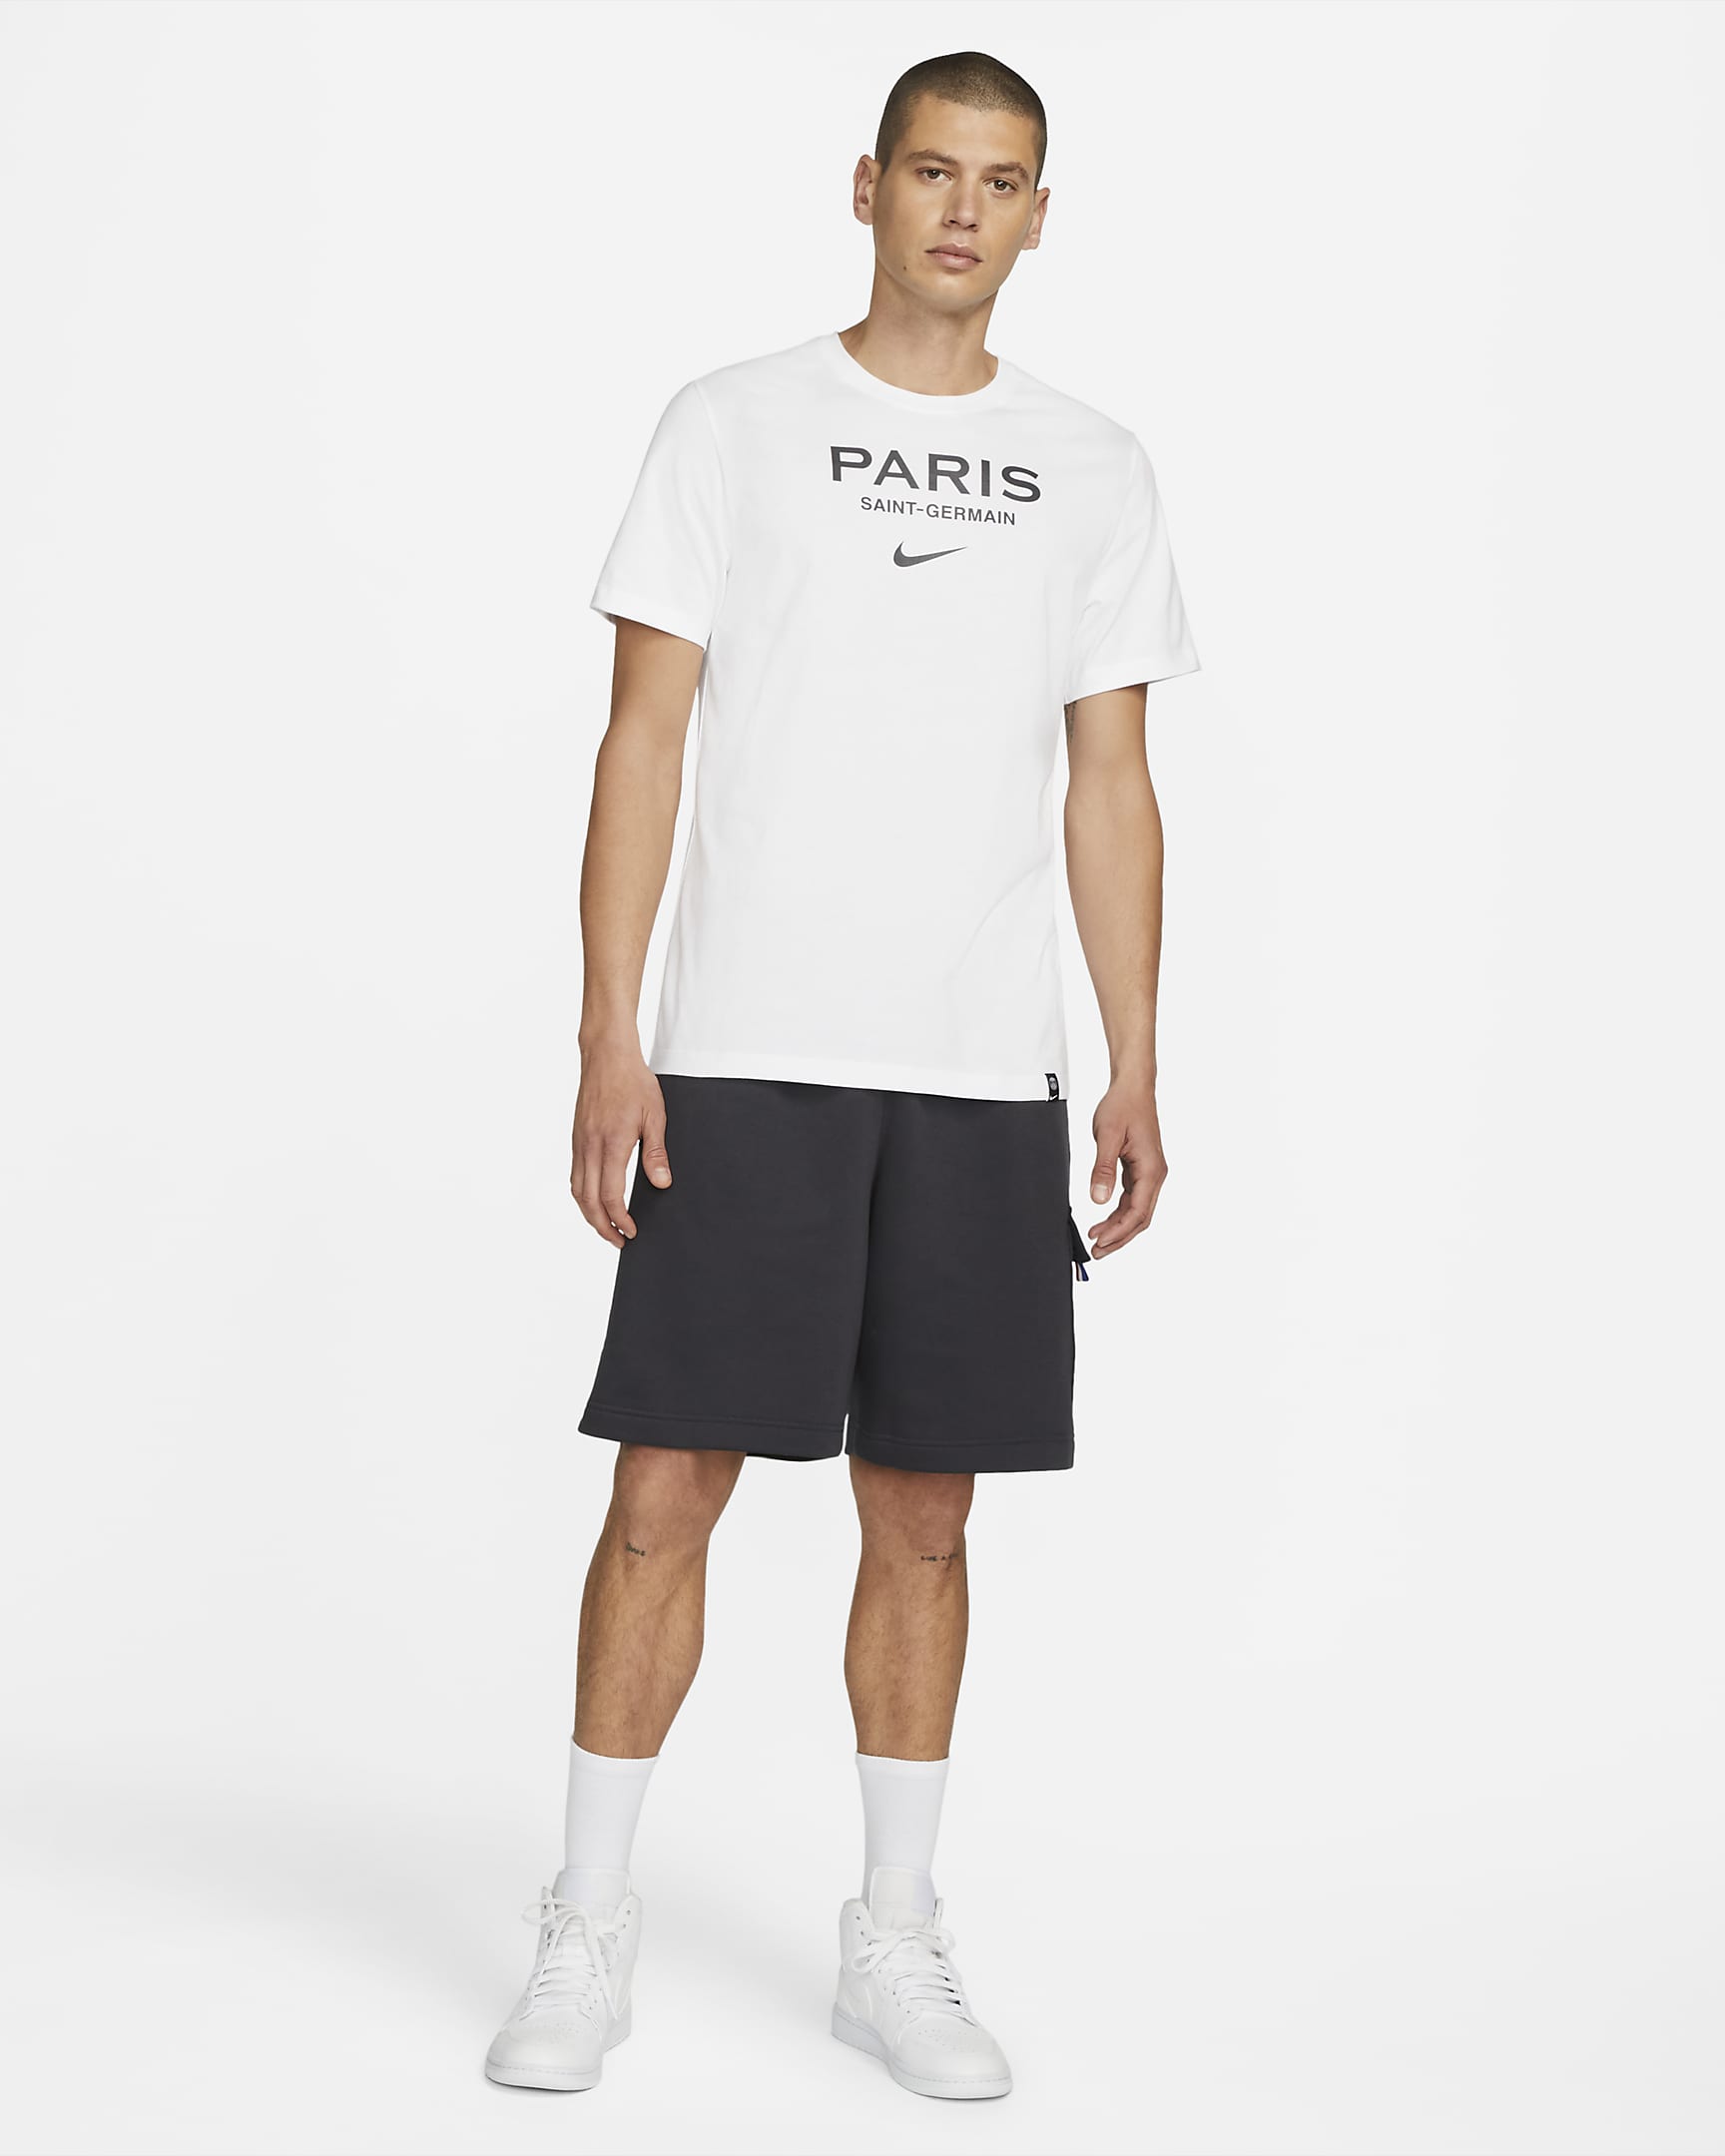 Paris Saint-Germain Swoosh Men's Nike Soccer T-Shirt. Nike JP